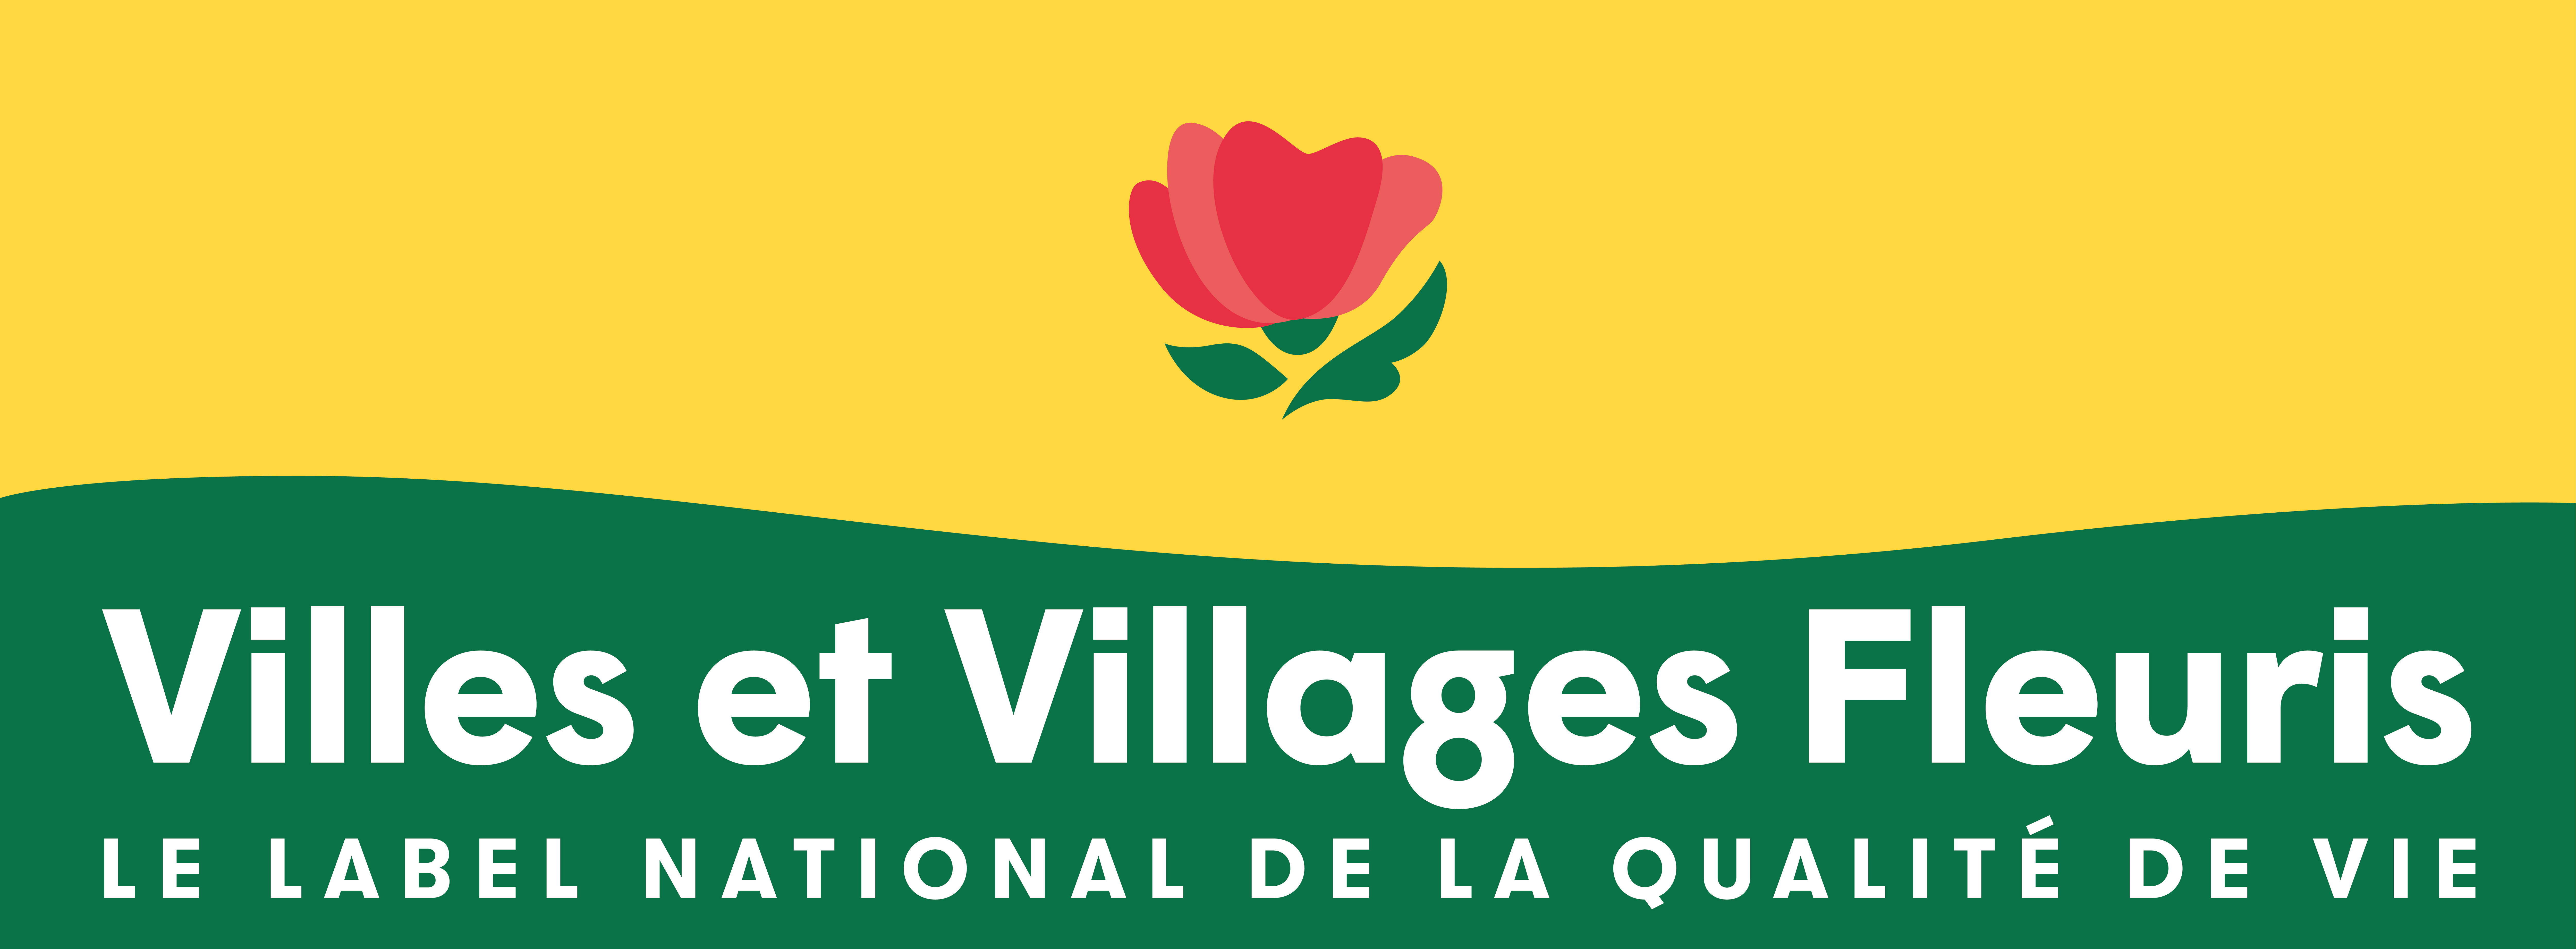 Logo Ville et Villages fleuries